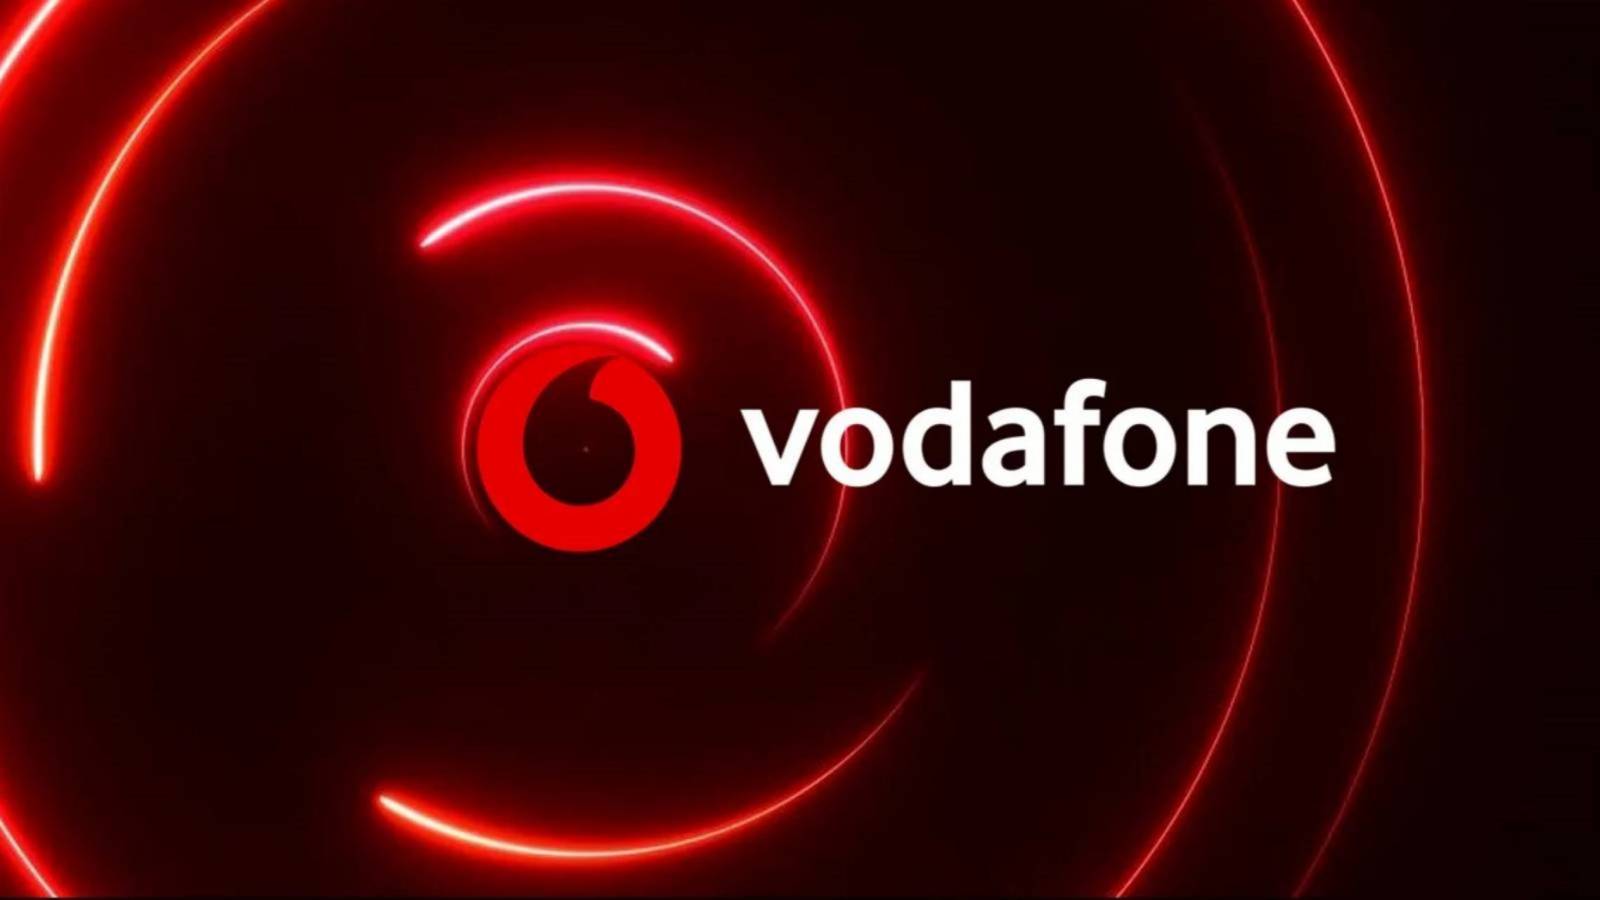 Vodafone hotspot